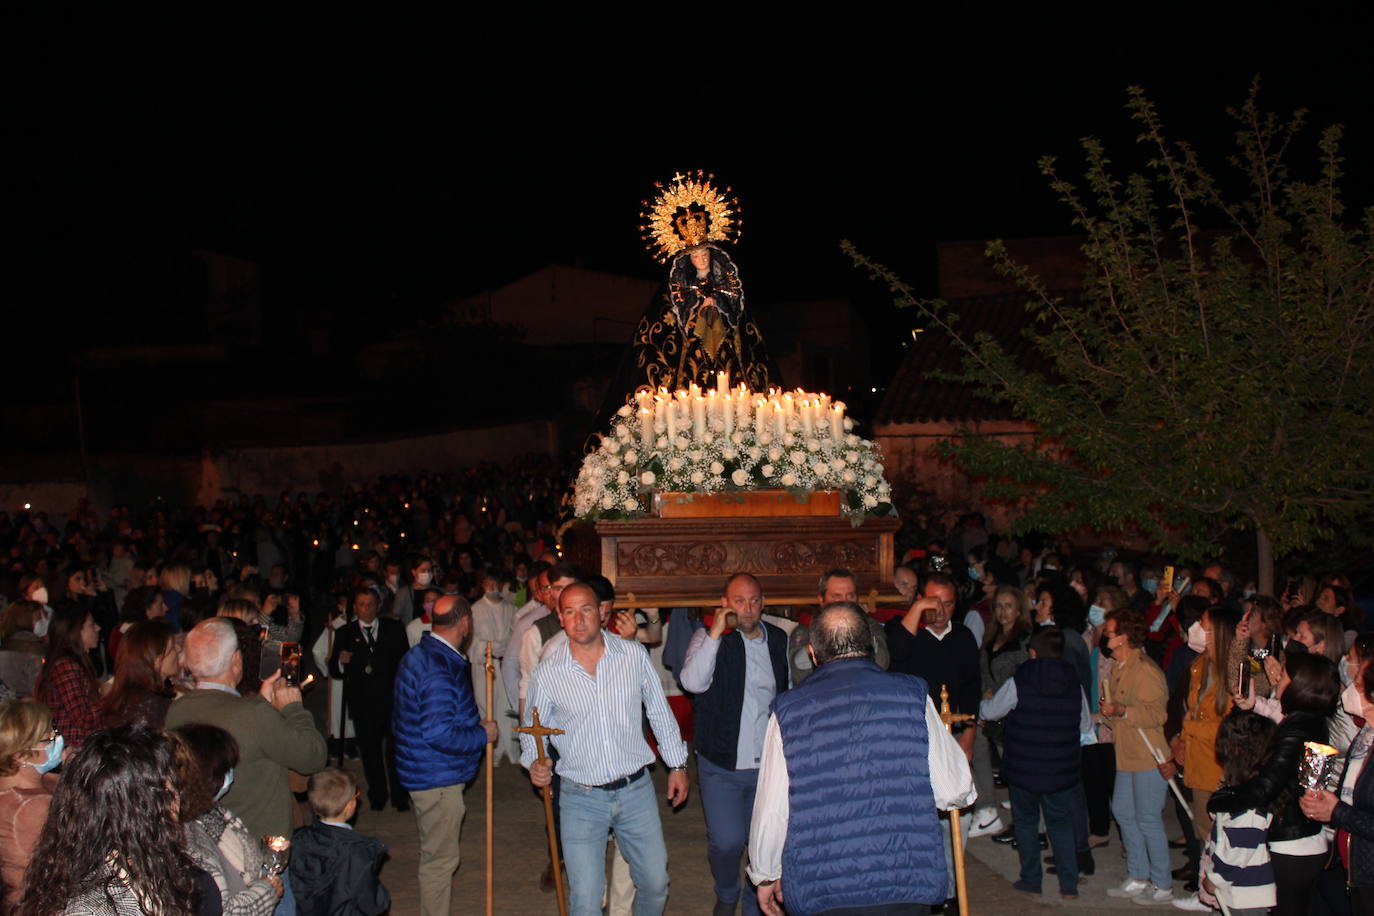 La explanada de La Ronda de la Soledad, anoche, repleta de personas con la llegada de la Virgen a su ermita. /L.C.G.